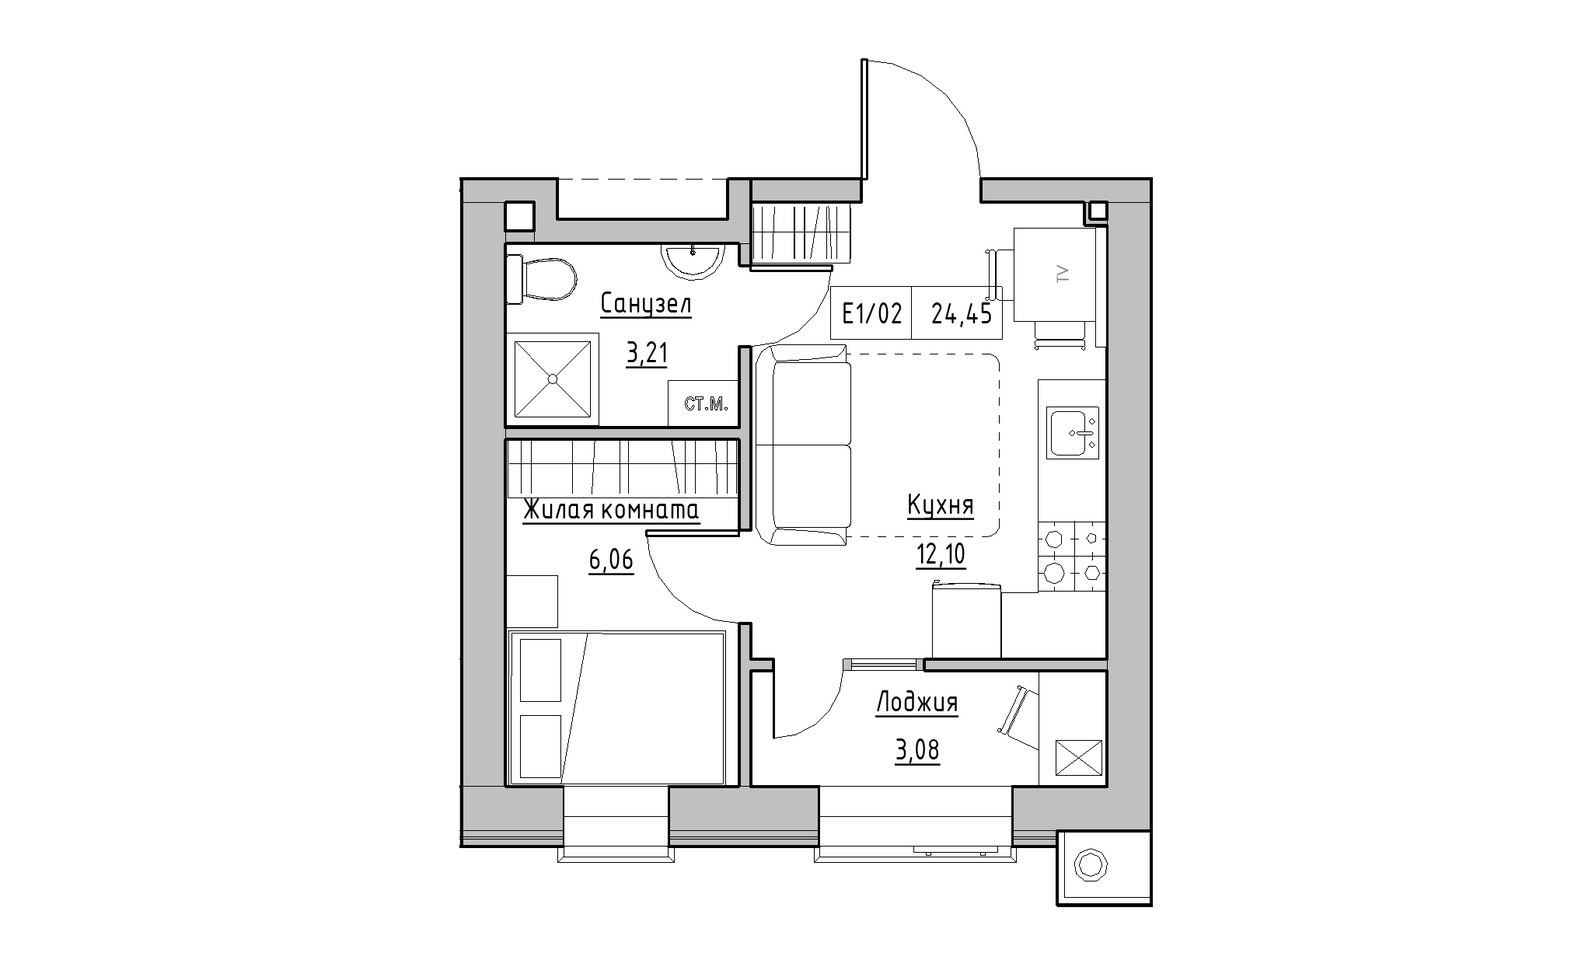 Планування 1-к квартира площею 24.45м2, KS-014-03/0002.